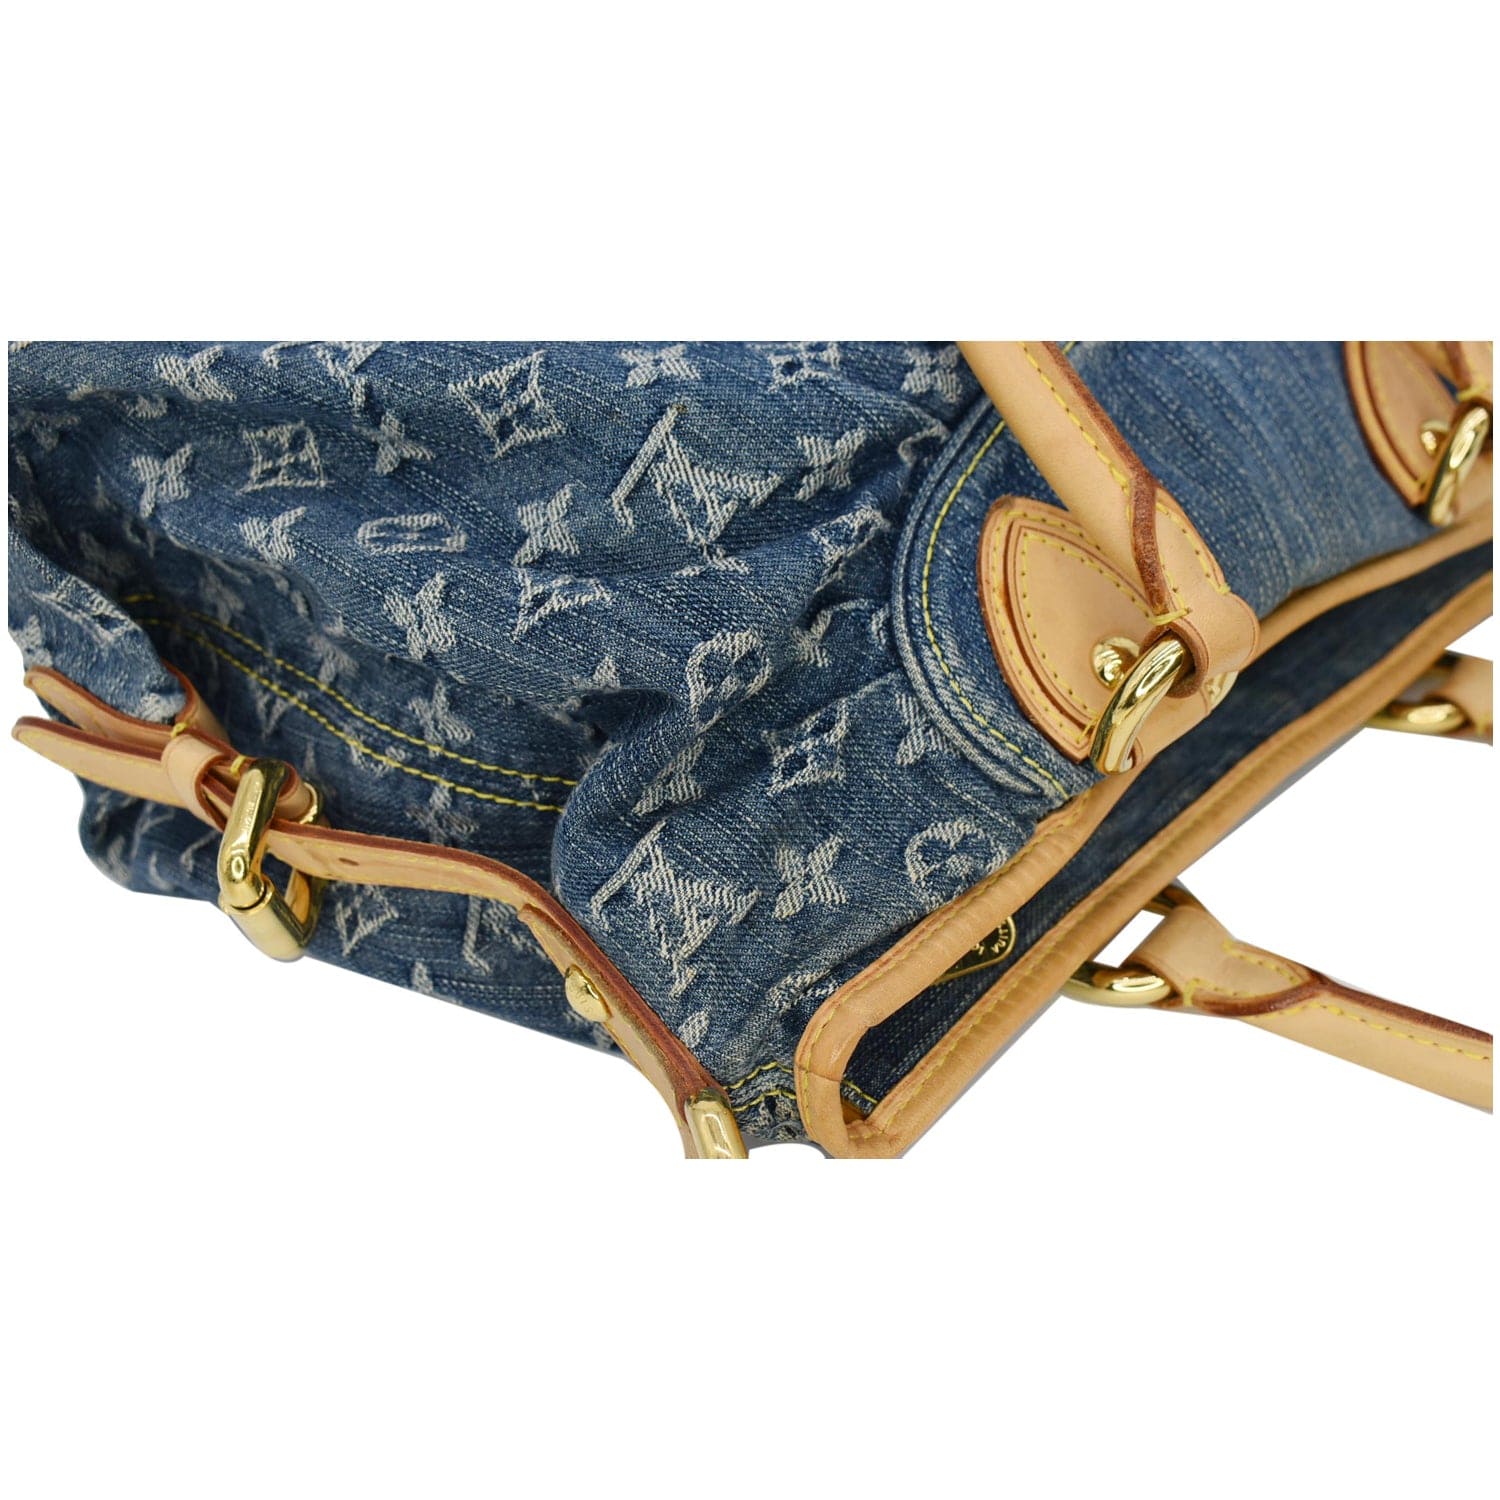 Louis Vuitton 2007 Pre-owned Denim Belt Bag - Blue